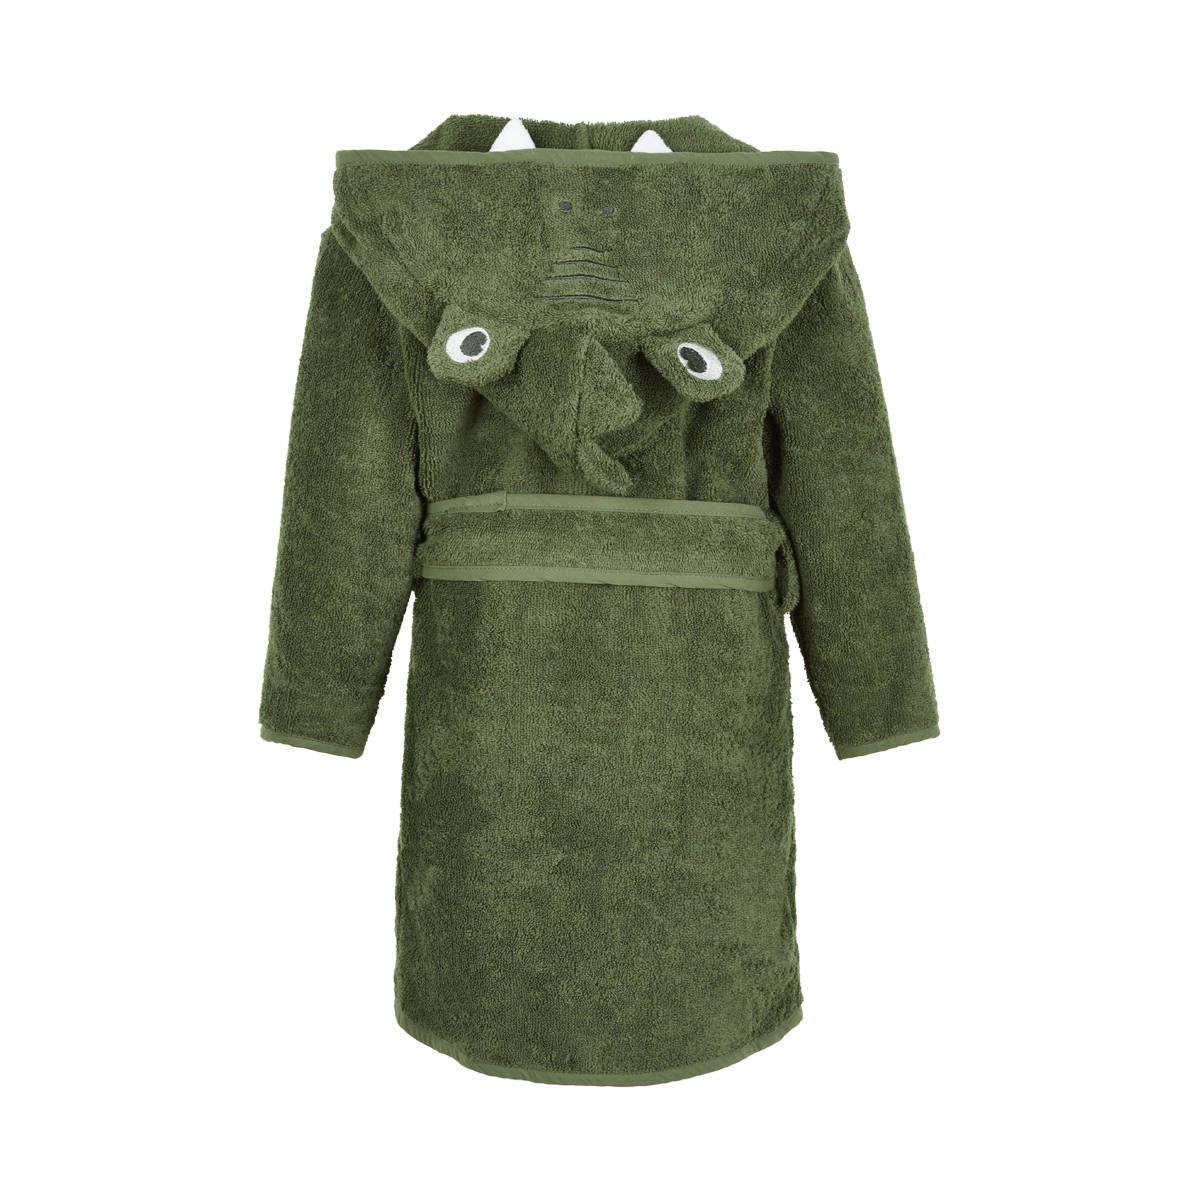 Pippi hommikumantel Krokodill Vannirätikud/ hommikumantlid - HellyK - Kvaliteetsed lasteriided, villariided, barefoot jalatsid